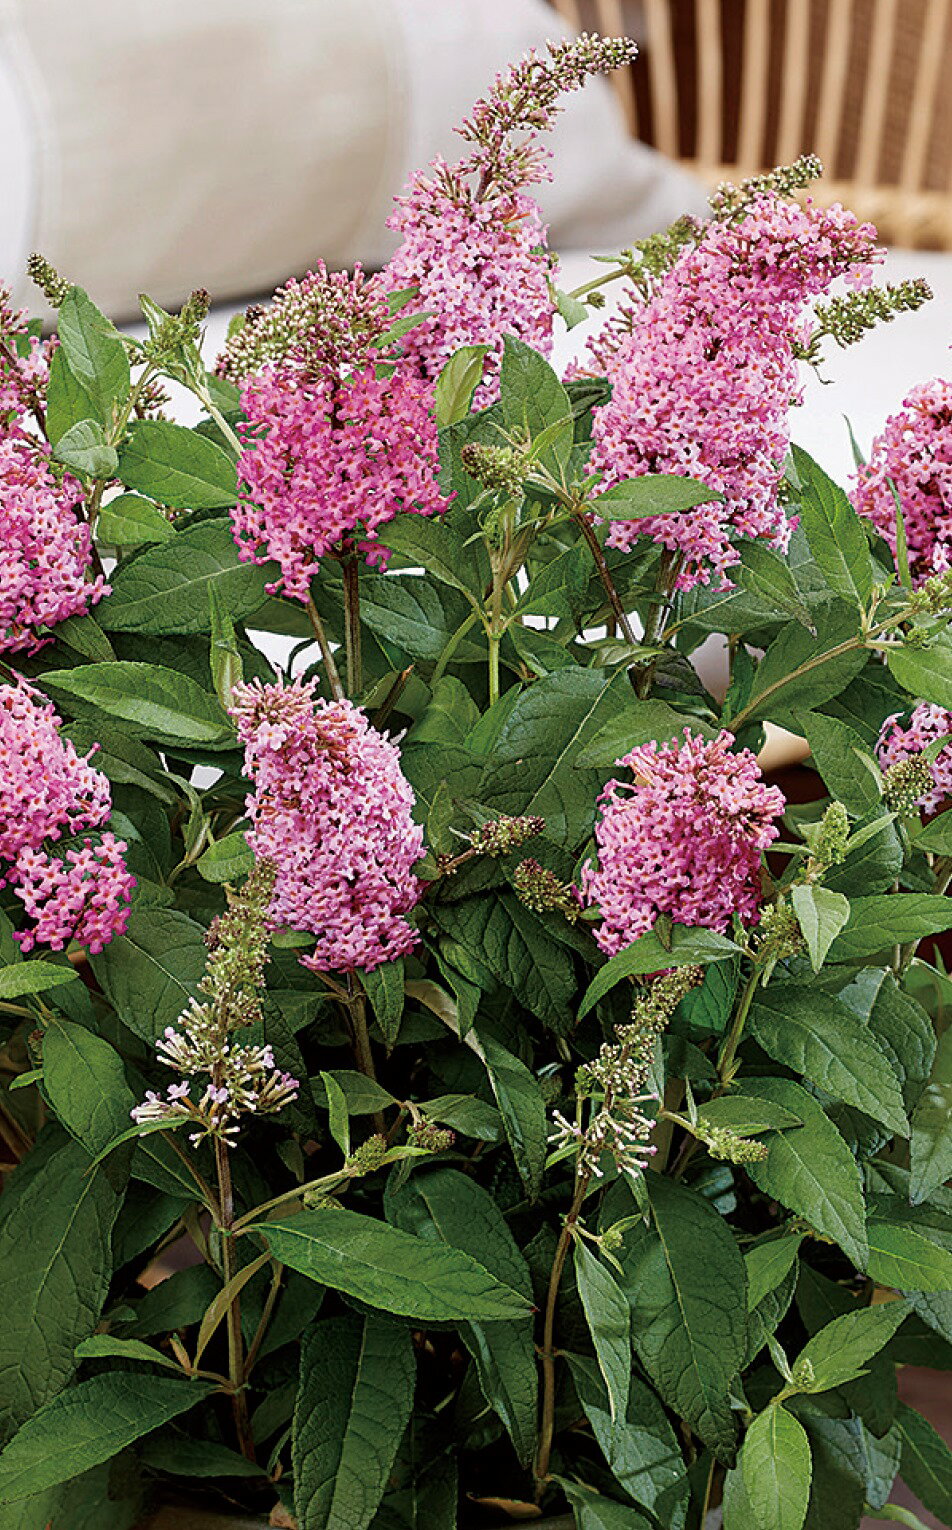 Buddleja davidii Butterfly Candy "Little Pink" コンパクトにまとまり花付きも抜群、甘い香りも魅力的。 甘い香りで蝶や蜂を呼び寄せるバタフライキャンディーシリーズ。 樹高、株幅ともに80cm程のコンパクトなサイズで小さなお庭や鉢植えに最適。 分枝性抜群で多くの花を咲かせ、自然と丸みを帯びた樹形にまとまります。 分類：フジウツギ科 / 耐寒性落葉低木 開花期：6月〜10月 成長草丈：約80cm 耐寒性：強 日照：日向 【場所】日あたりと水はけのよいところを好みます。 宿根草は多肥を嫌うものが多いですが、植え付け時やお花が終わった後に肥料を適量施すと効果的です。 宿根草の肥料としては”バイオゴールドオリジナル（天然有機肥料）900g ”が使いやすく、おすすめです。苗と同梱できます。※画像は苗のイメージです。お届けする商品ではありません。 お届けします苗は販売用のポットに入れていますので、できるだけ早めにお手持ちの植木鉢かお庭に植えつけることをお勧め致します。植え付ける際は根を痛めないようにお気をつけ下さい。鉢植えの場合の植え付け後の管理の仕方をご紹介いたしますので、参考にしてみてください。植付けの仕方や育て方、利用法などご不明な点がございましたら、お気軽にお問い合わせ下さい。 鉢植えの管理について 植え付けしたあと4〜5日は直射日光のあたらない涼しいところに置いて、毎朝水やりをしてください。その後は、日当たりのよいところに置いて、土が乾いて、葉が萎えてきたら、鉢の底から流れ出るくらい水をたっぷりあげてください。 葉の色が薄くなってきたら肥料分が少なくなってきているサインですので、肥料をあげてください。 ハーブは比較的、乾燥気味を好みますので、水のやりすぎに注意してください。 花が開いているときは、花にかからないよう根元に 花に水がかかってしまうと、花の寿命が短くなります。つぼみのまま腐ったり、灰色カビ病の原因になることもありますから。なんとなく見覚えのあるという人もいるのではないでしょうか？ 大きな葉ものは、水が根元まで届いているかな？ 葉の大きいものやよく茂っているときは、葉を伝って水が外に流れるので、株の上からかけないで、ジョウロの口をはずして根元にあげてください。 受け皿にたまった水は根腐れの原因！ 受け皿に水がたまっていると、毛細管現象で水が鉢の中にあがってきます。長時間土が湿っていると、根腐れを起こす原因になります。受け皿の水は捨ててください。 葉水は霧吹きで 乾燥を嫌う植物には、霧吹きで葉水を与えます。そうでないものでも、暖房などで部屋が乾燥していたら、霧水をしてあげて空中湿度を高めます。